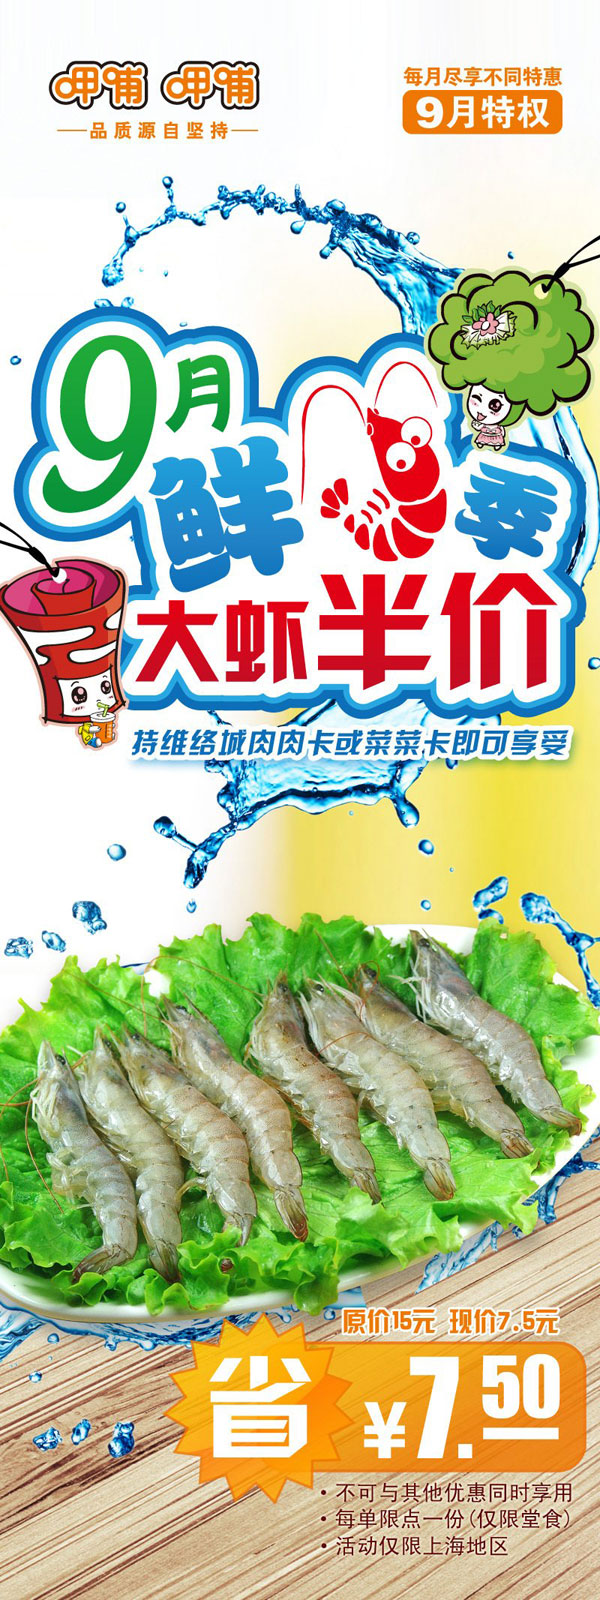 上海呷哺呷哺2012年9月特权：大虾半价，省7.5元 有效期至：2012年9月30日 www.5ikfc.com